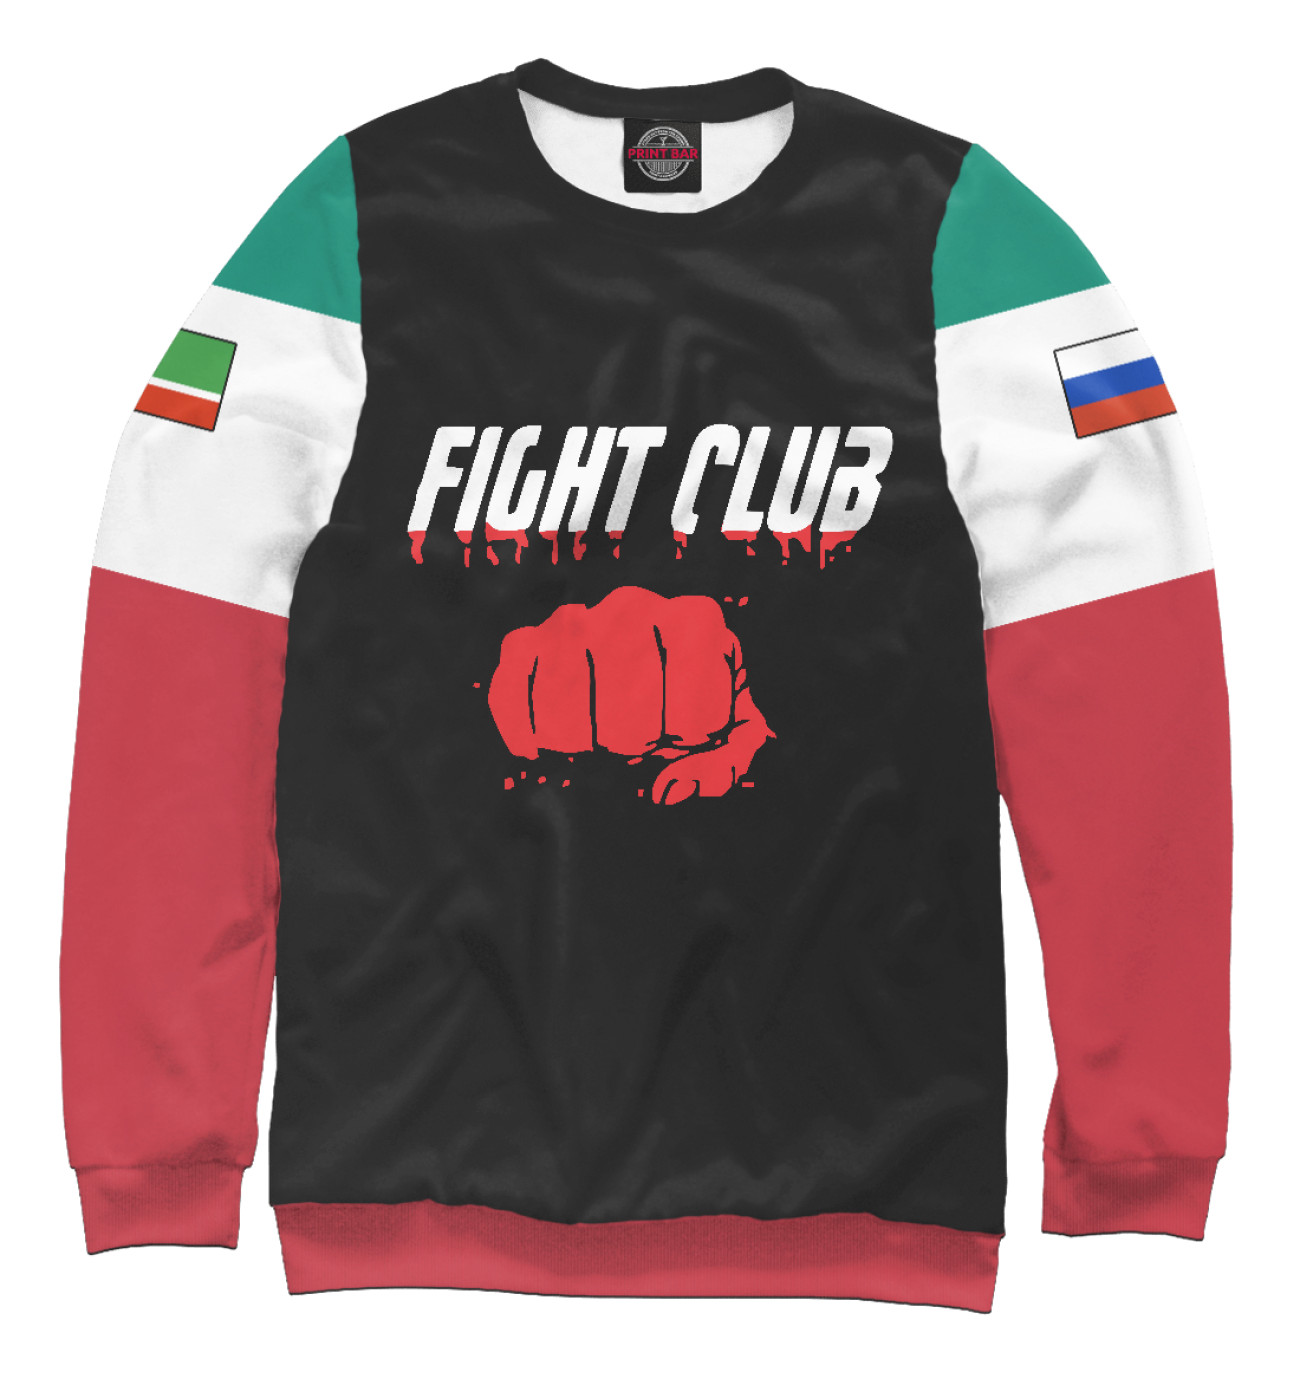 Мужской Свитшот Fight club, артикул: AFC-779090-swi-2